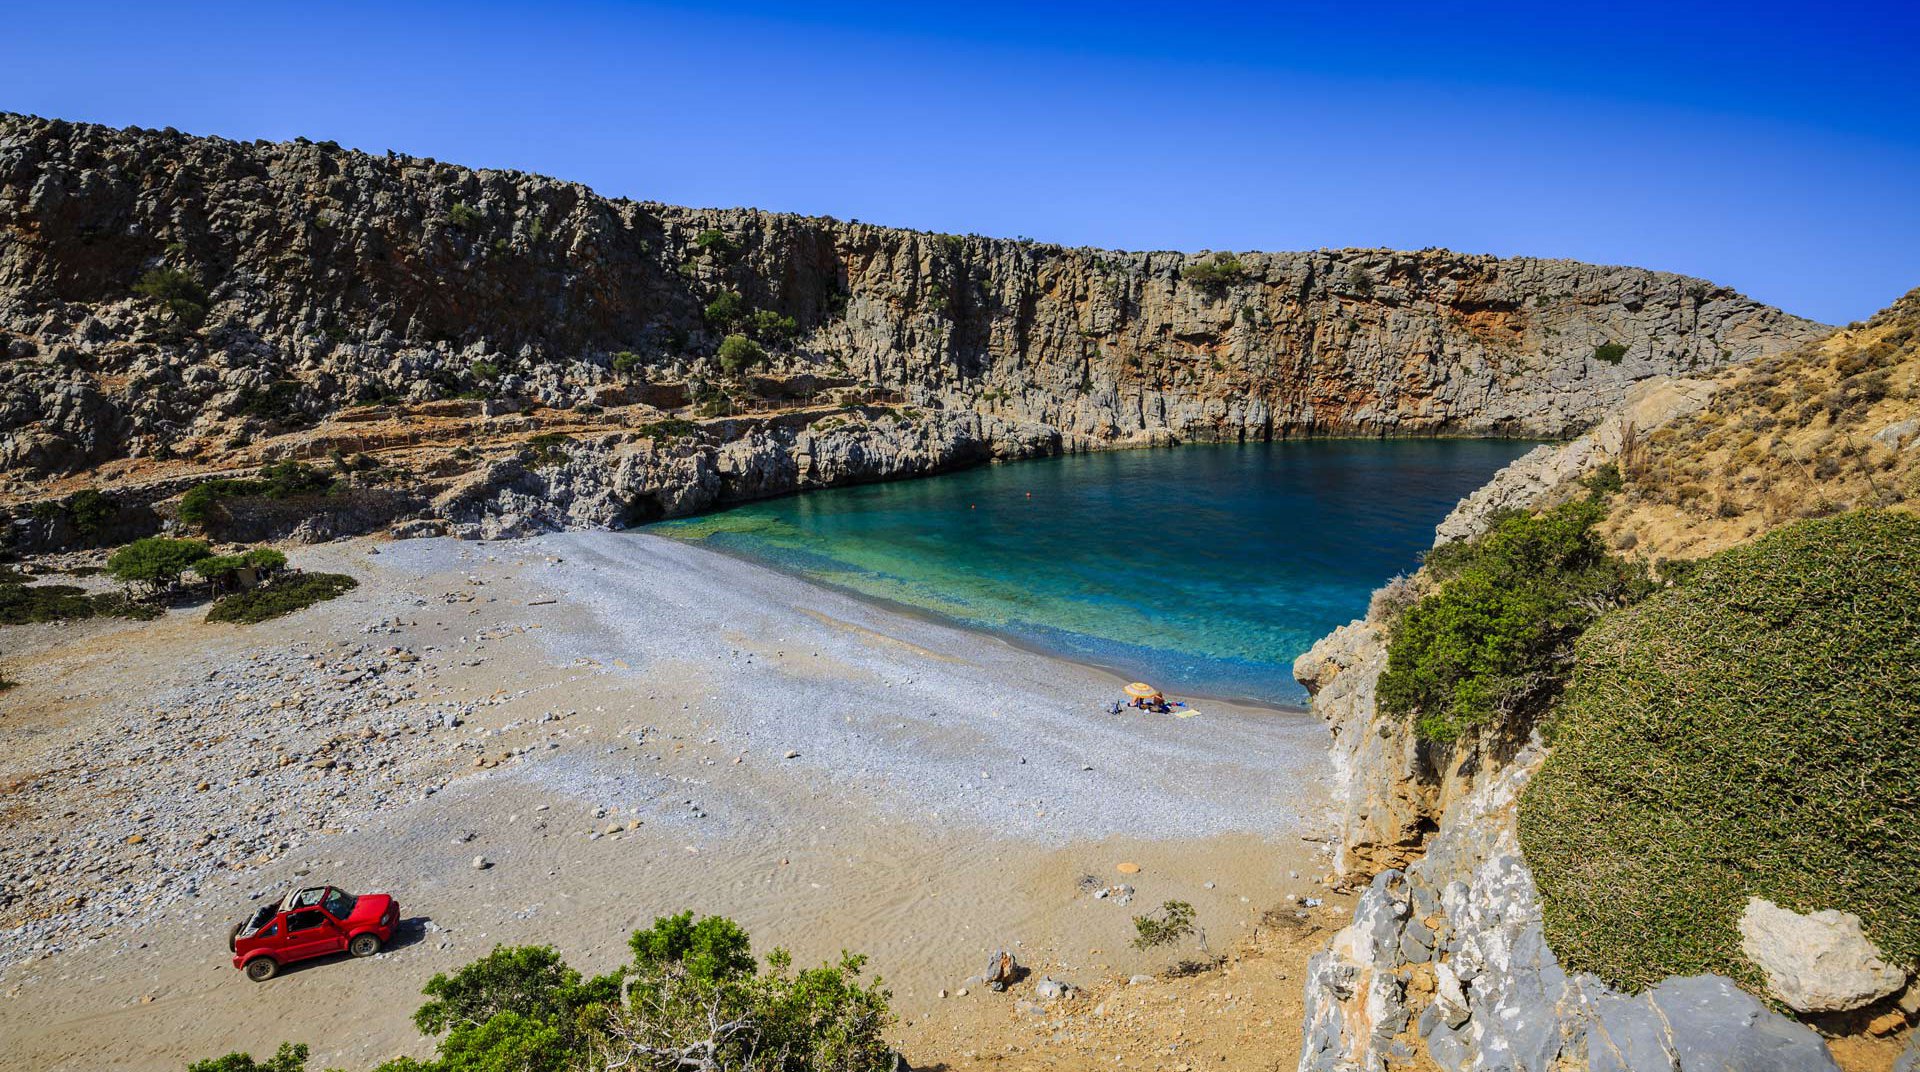 Ενοικιάστε ένα SUV και ανακαλύψτε κρυφές παραλίες στην Κρήτη